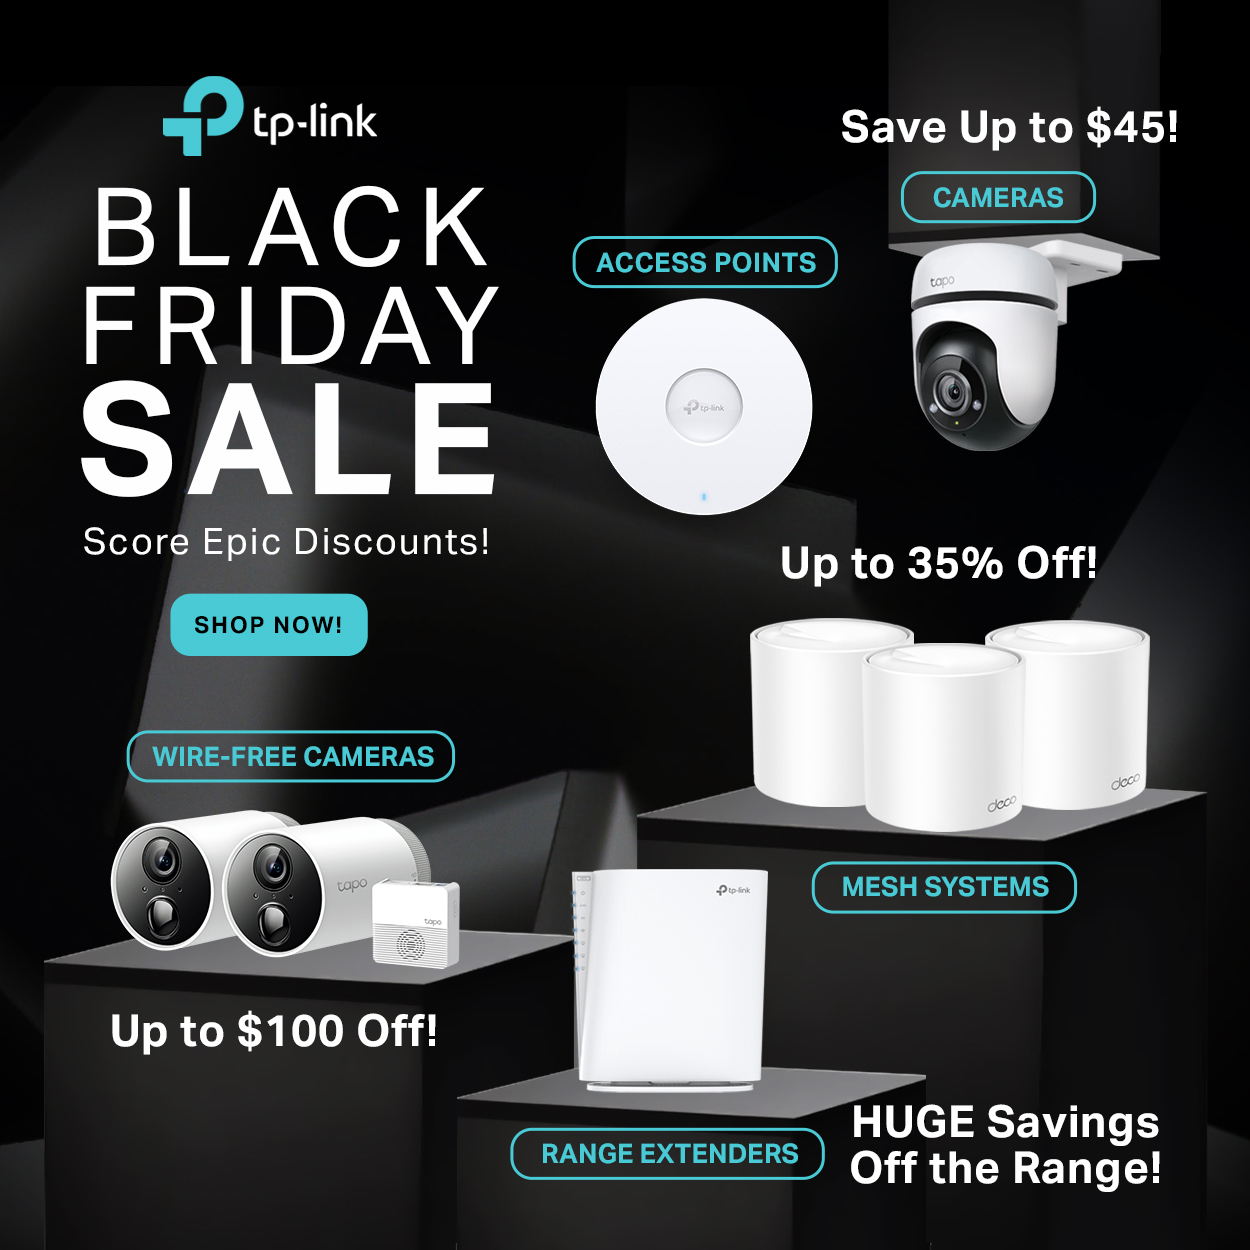 TP-Link Black Friday Sale - Huge Savings Off the Range!